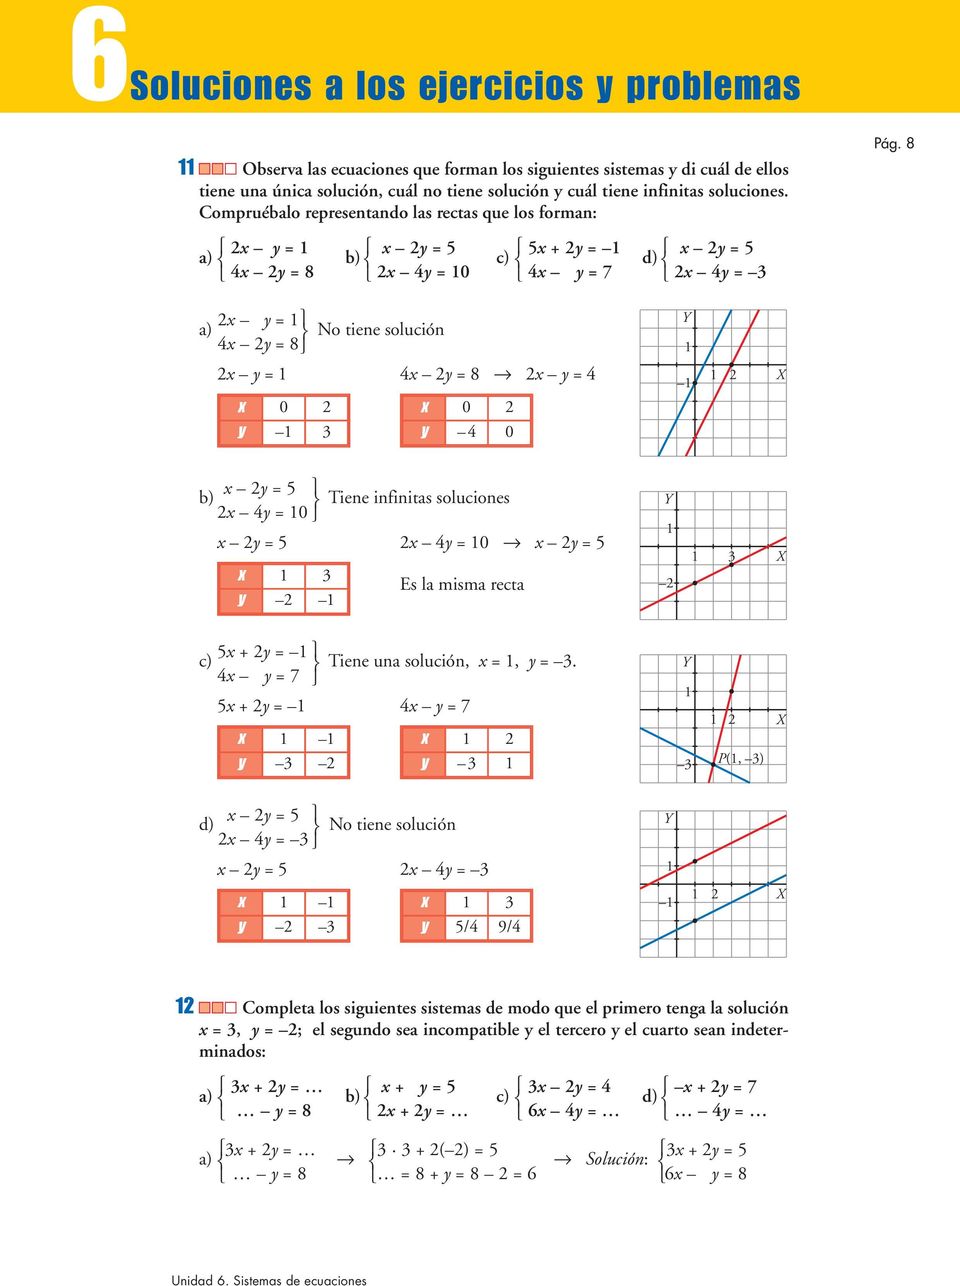 x y = a) 4x y = No tiene solución x y = 4x y = x y = 4 x 0 y 3 x 0 y 4 0 Y X x y = 5 b) x 4y = 0 Tiene infinitas soluciones x y = 5 x 4y = 0 x y = 5 x 3 y Es la misma recta Y 3 X 5x + y = c) 4x y = 7